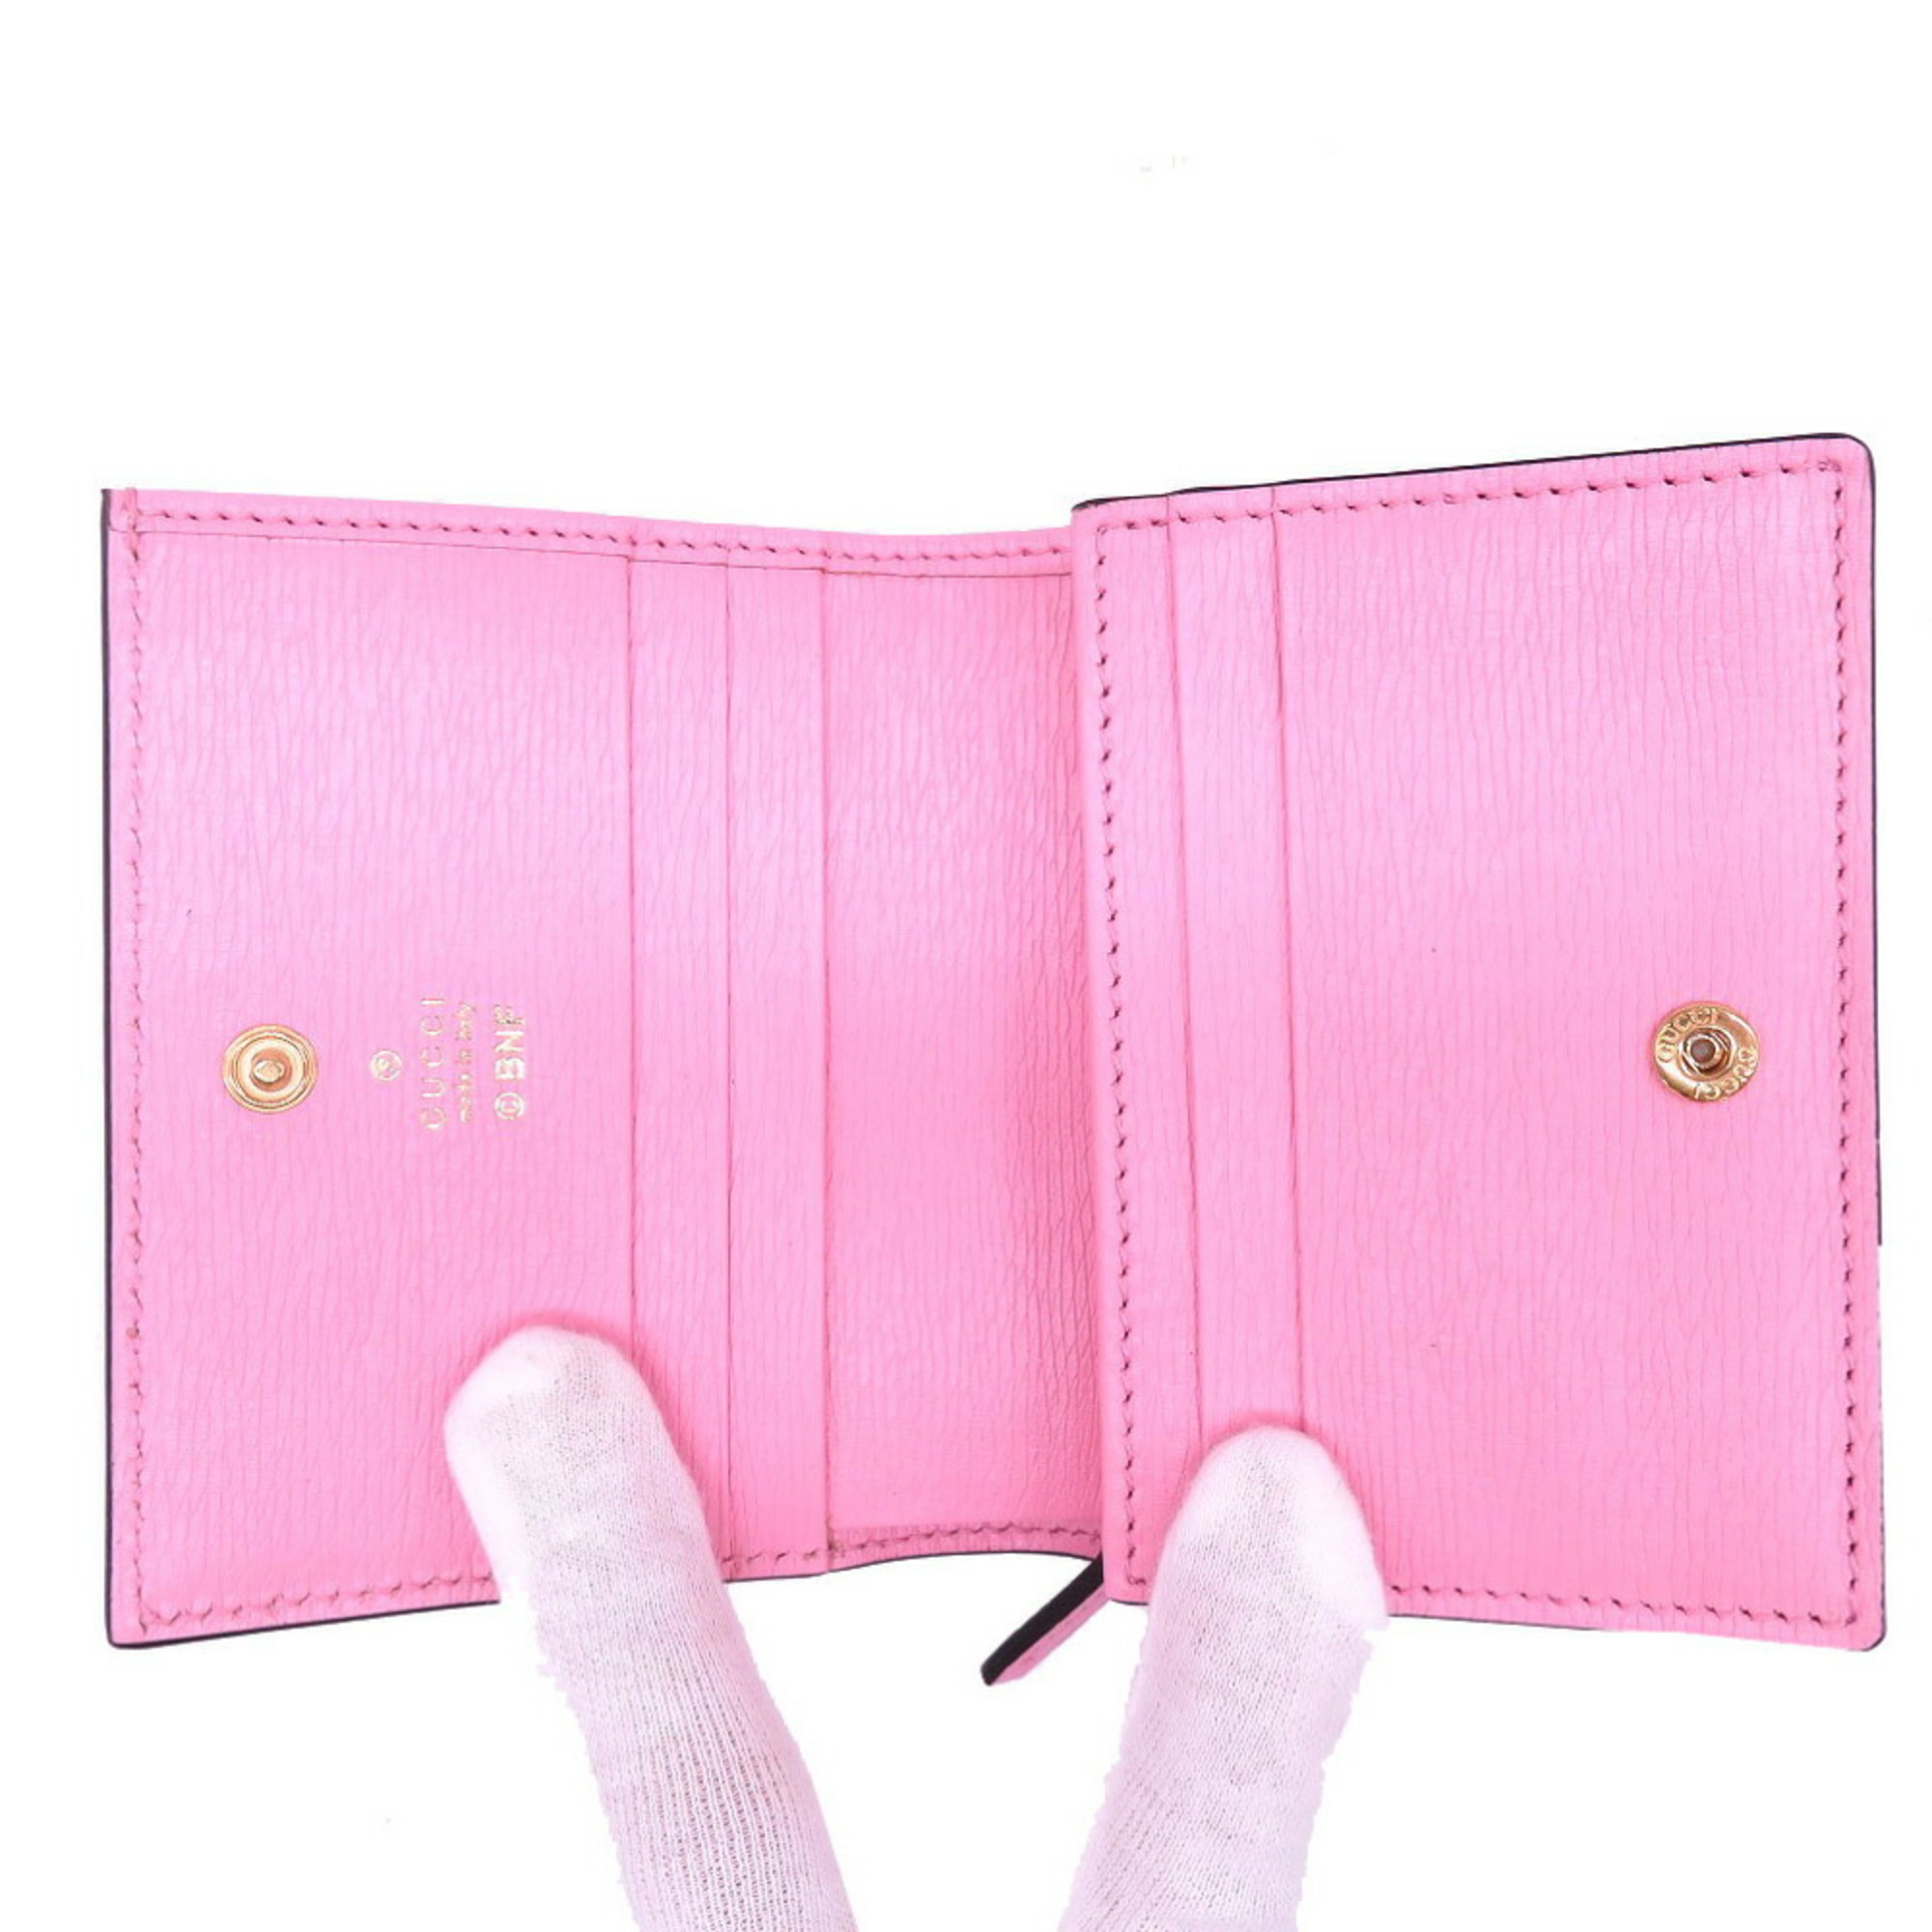 Gucci Bananya Banana Bifold Wallet Leather Pink 0088GUCCI 6A0088A5